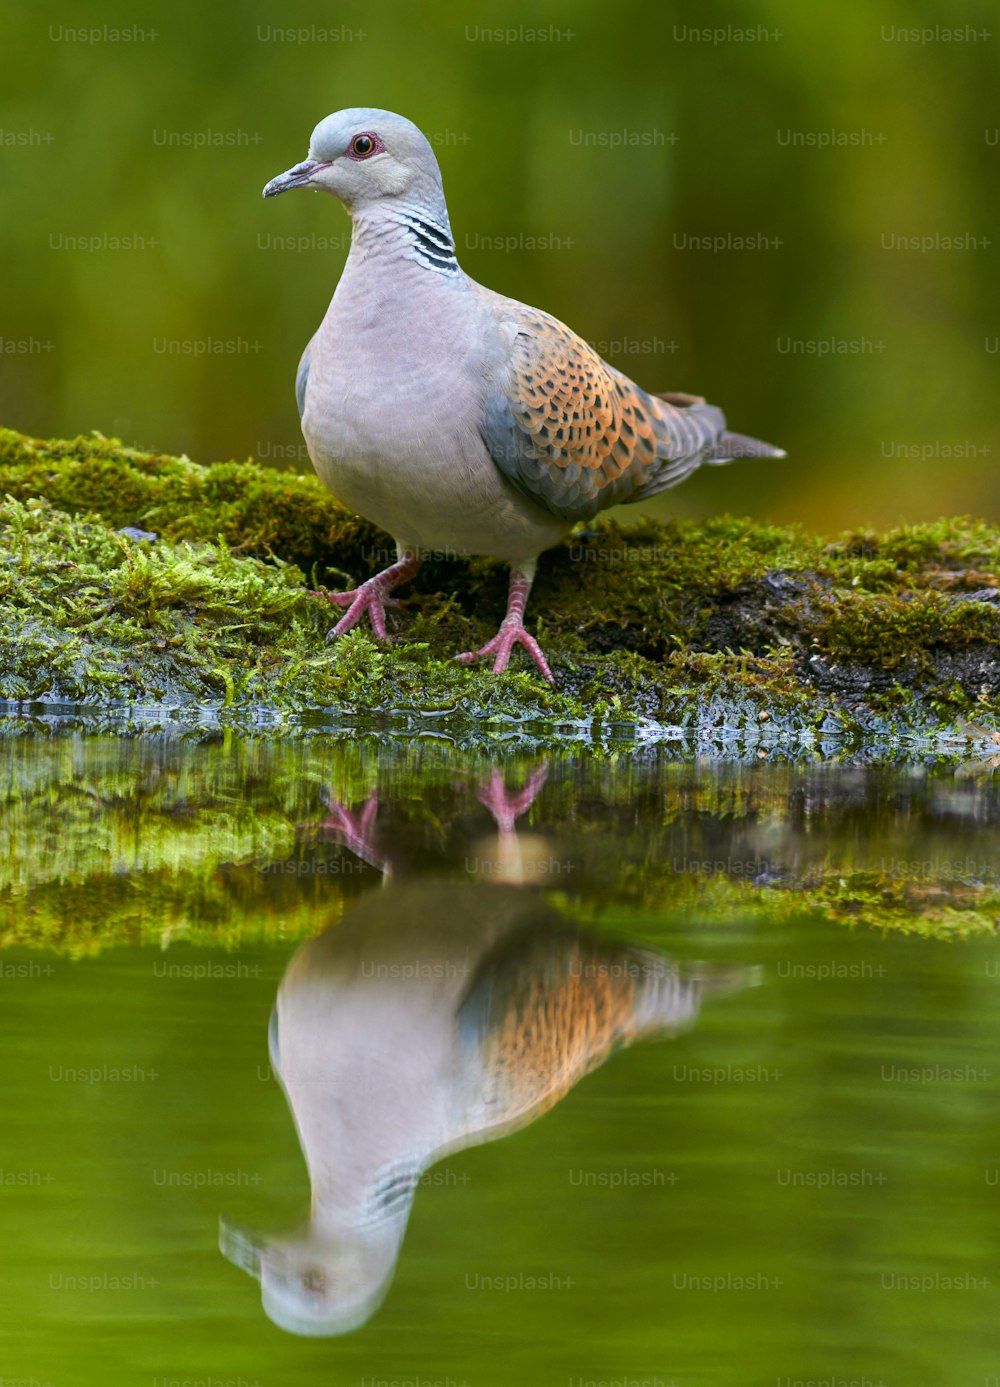 un oiseau se tient debout sur une bûche couverte de mousse